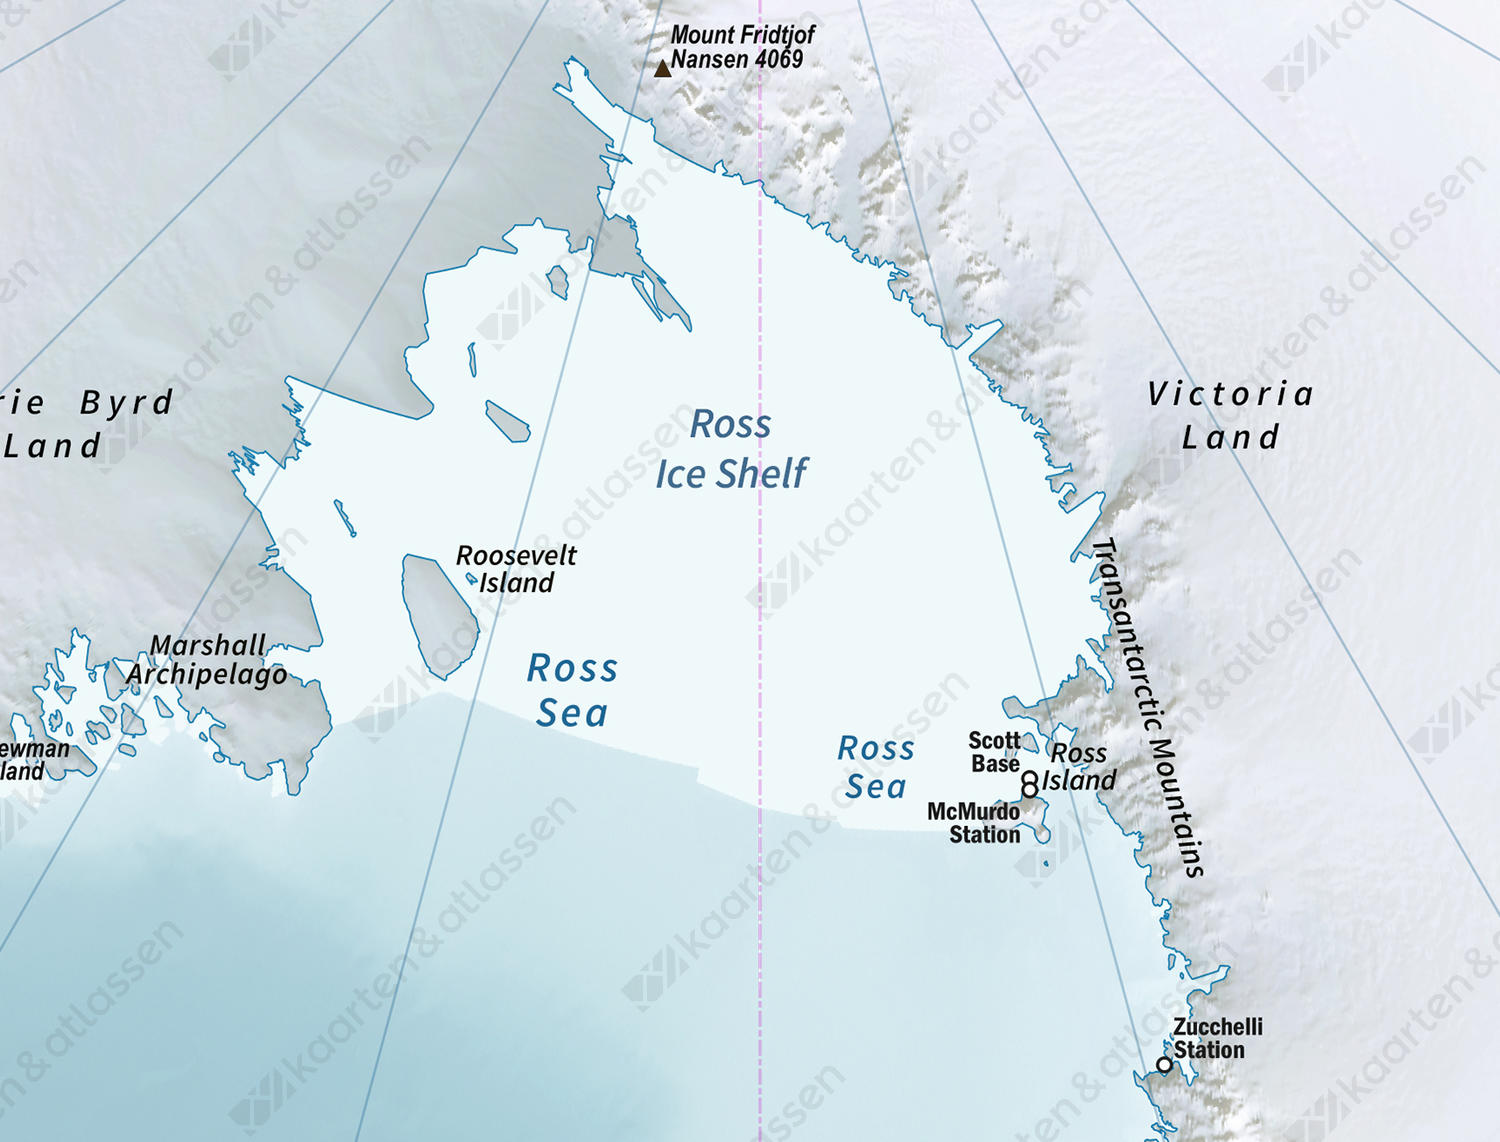 Antarctica - Zuidpool